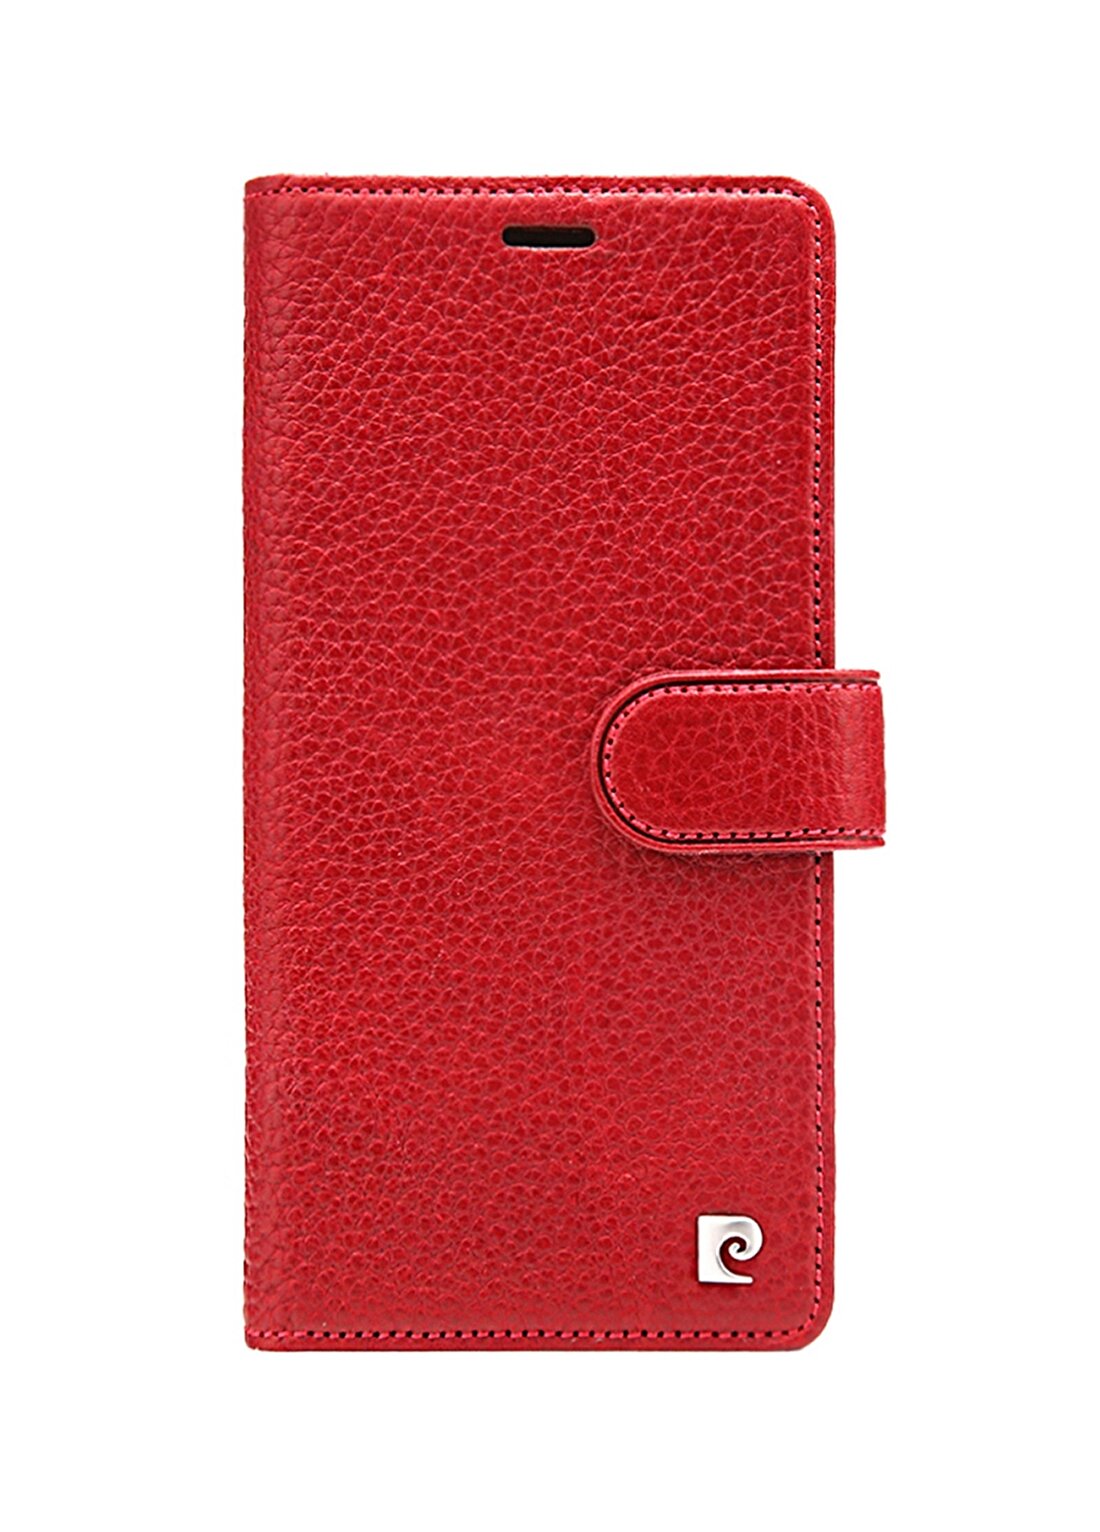 Pierre Cardin PCS-P08 Iphone XR (6.1) Bordo Kapaklı Cüzdan Kılıf Telefon Aksesuarı